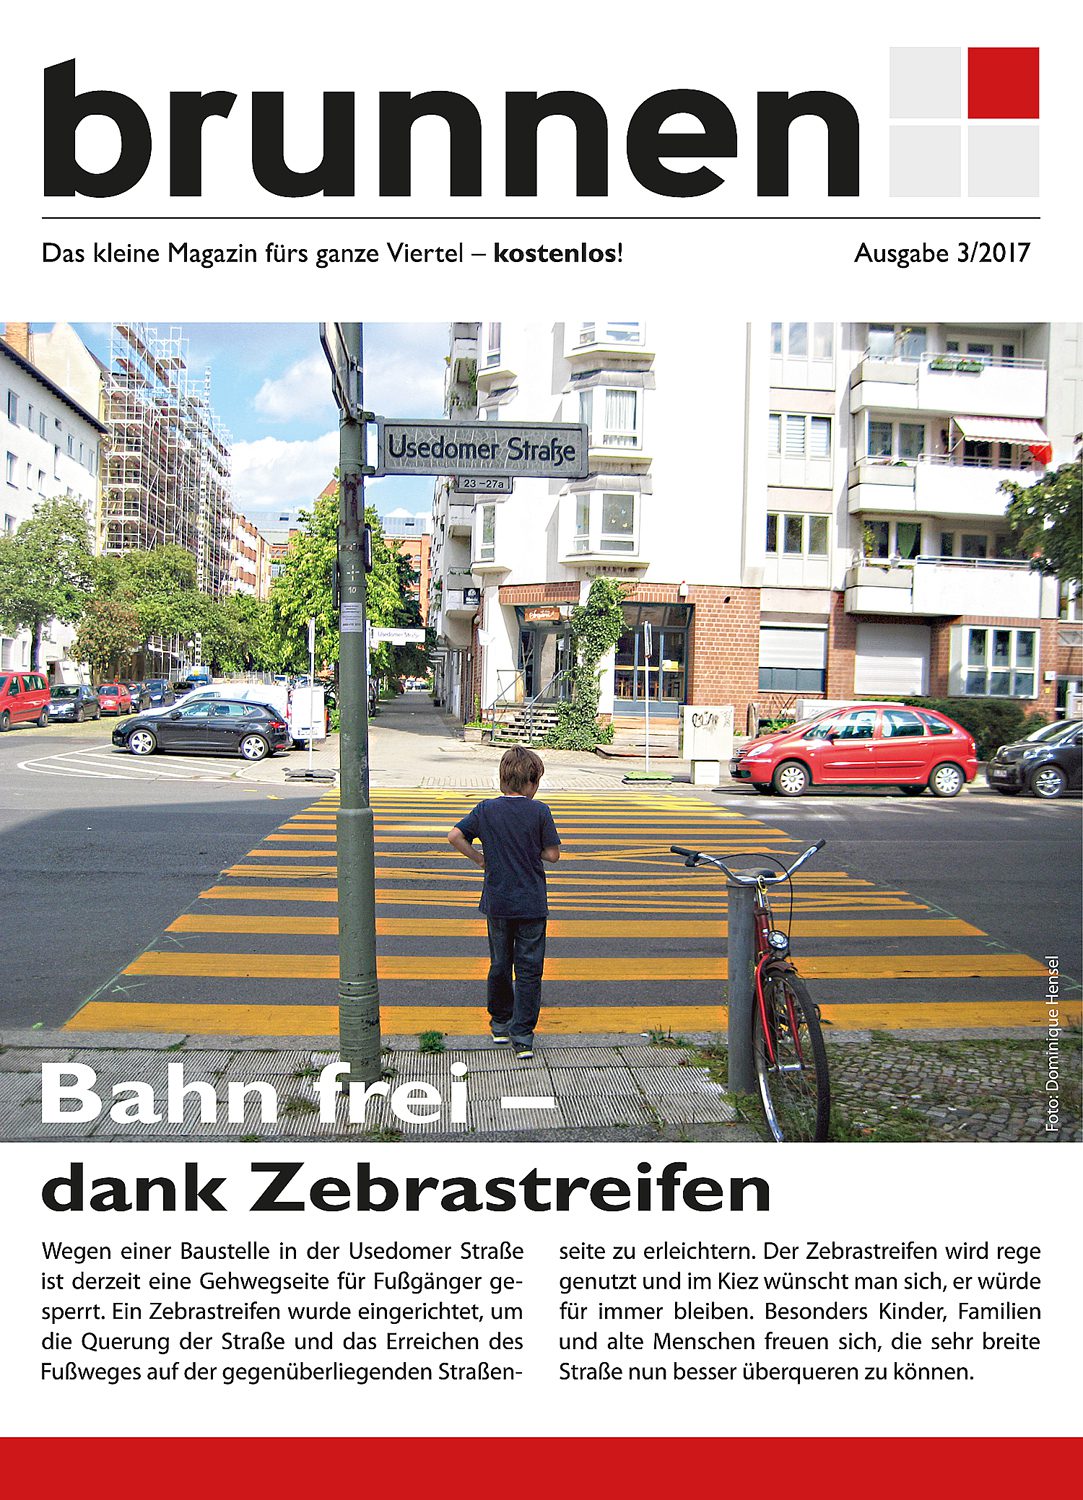 Das Cover des aktuellen Kiezmagazins im Brunnenviertel.